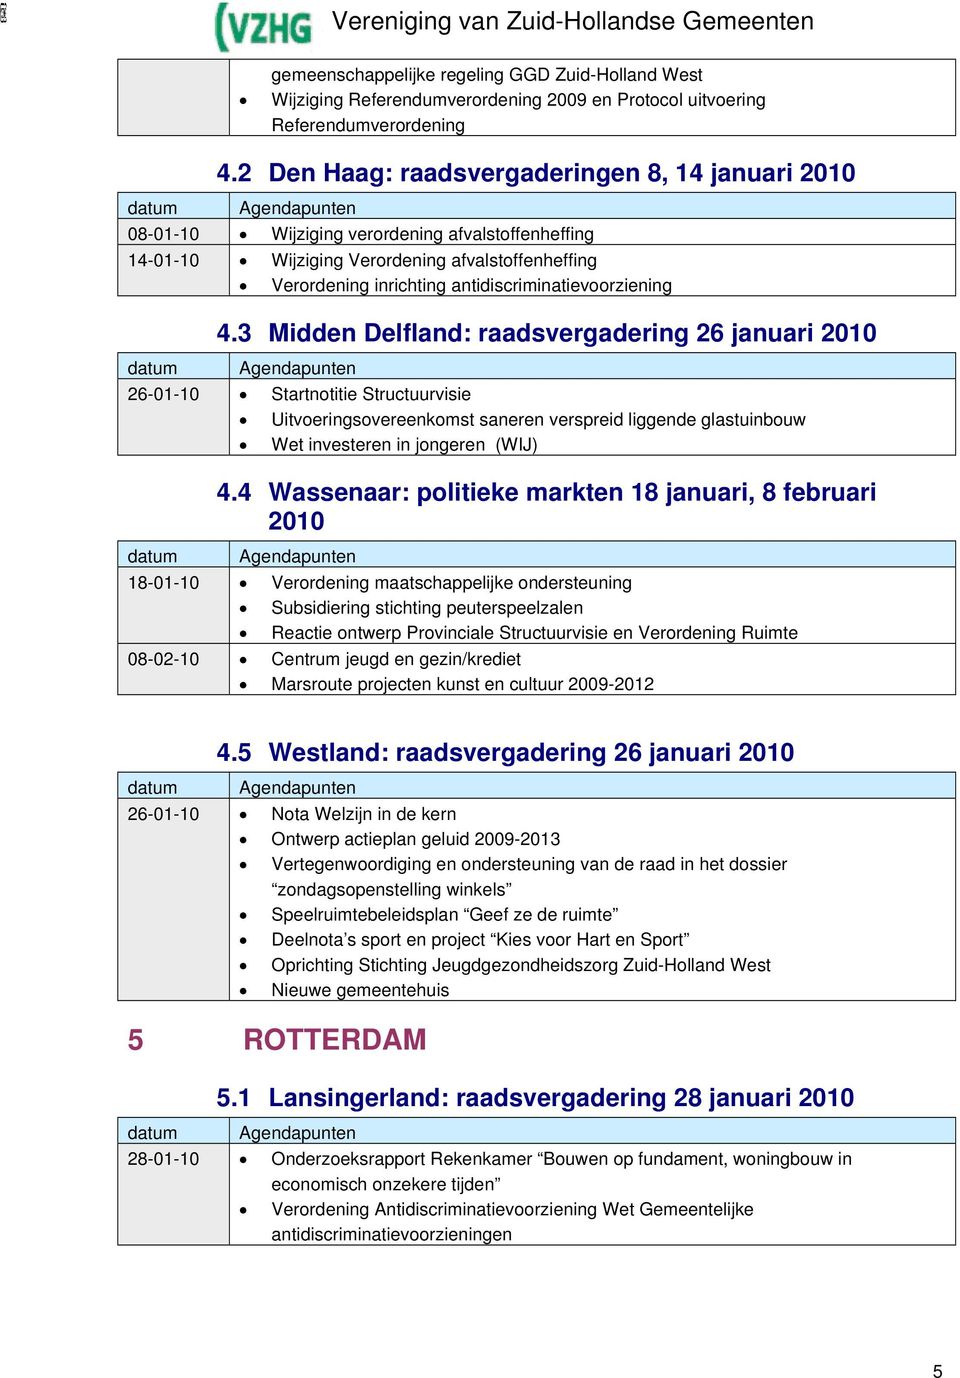 4.3 Midden Delfland: raadsvergadering 26 januari 26-01-10 Startnotitie Structuurvisie Uitvoeringsovereenkomst saneren verspreid liggende glastuinbouw Wet investeren in jongeren (WIJ) 4.